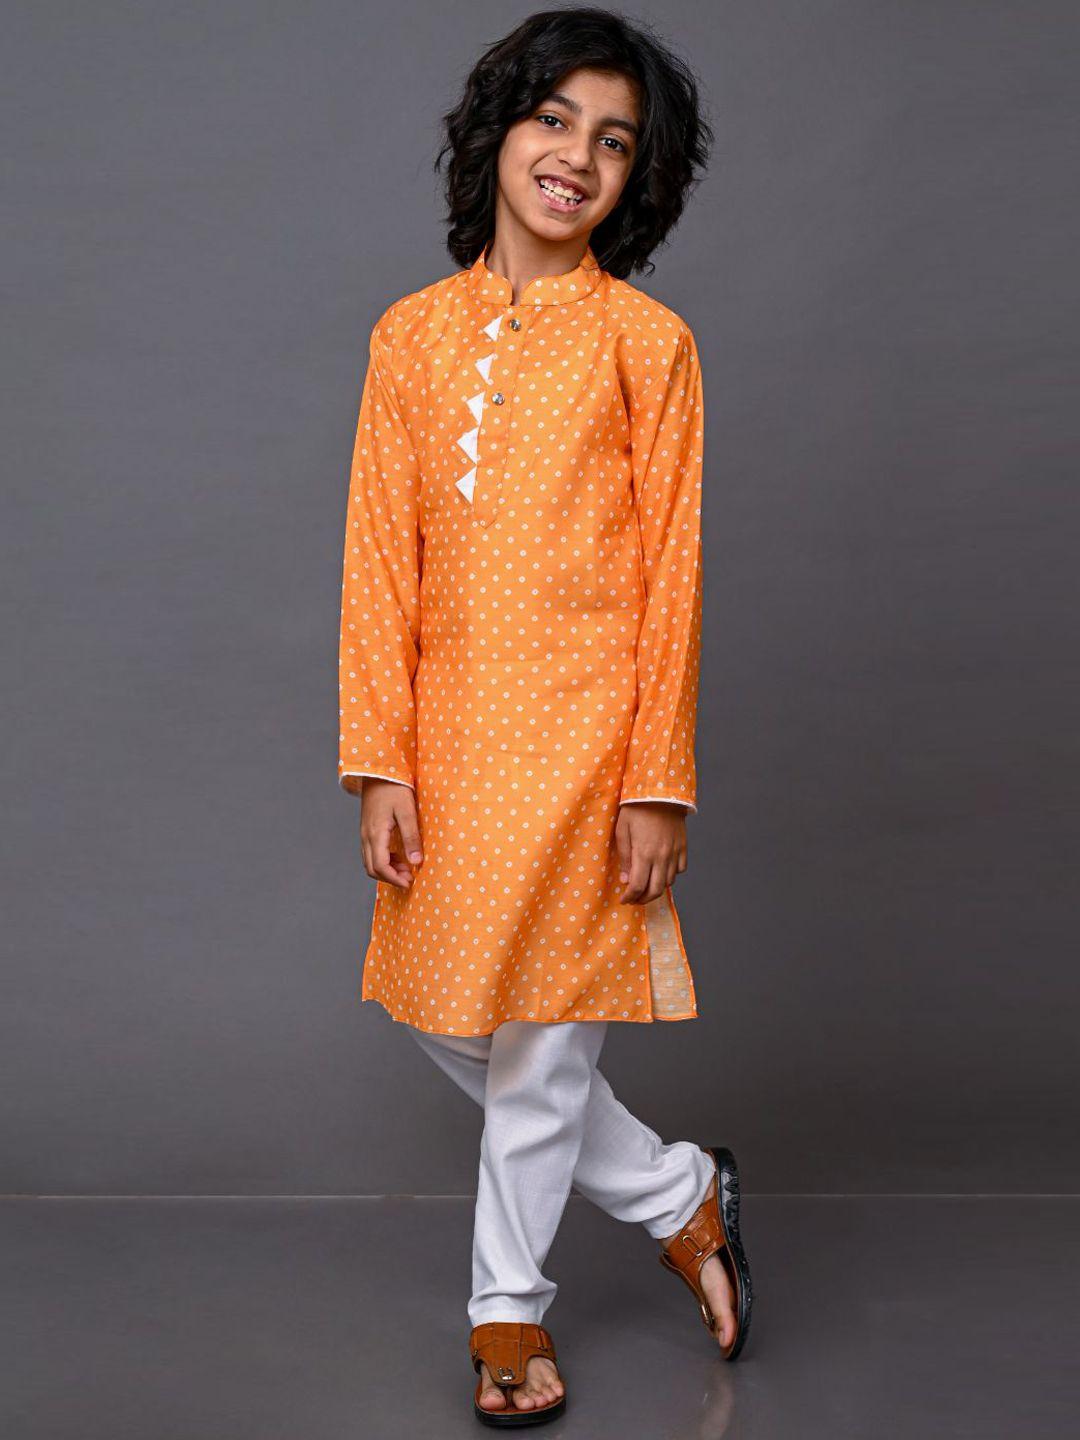 vesham boys yellow printed kurta with pyjamas